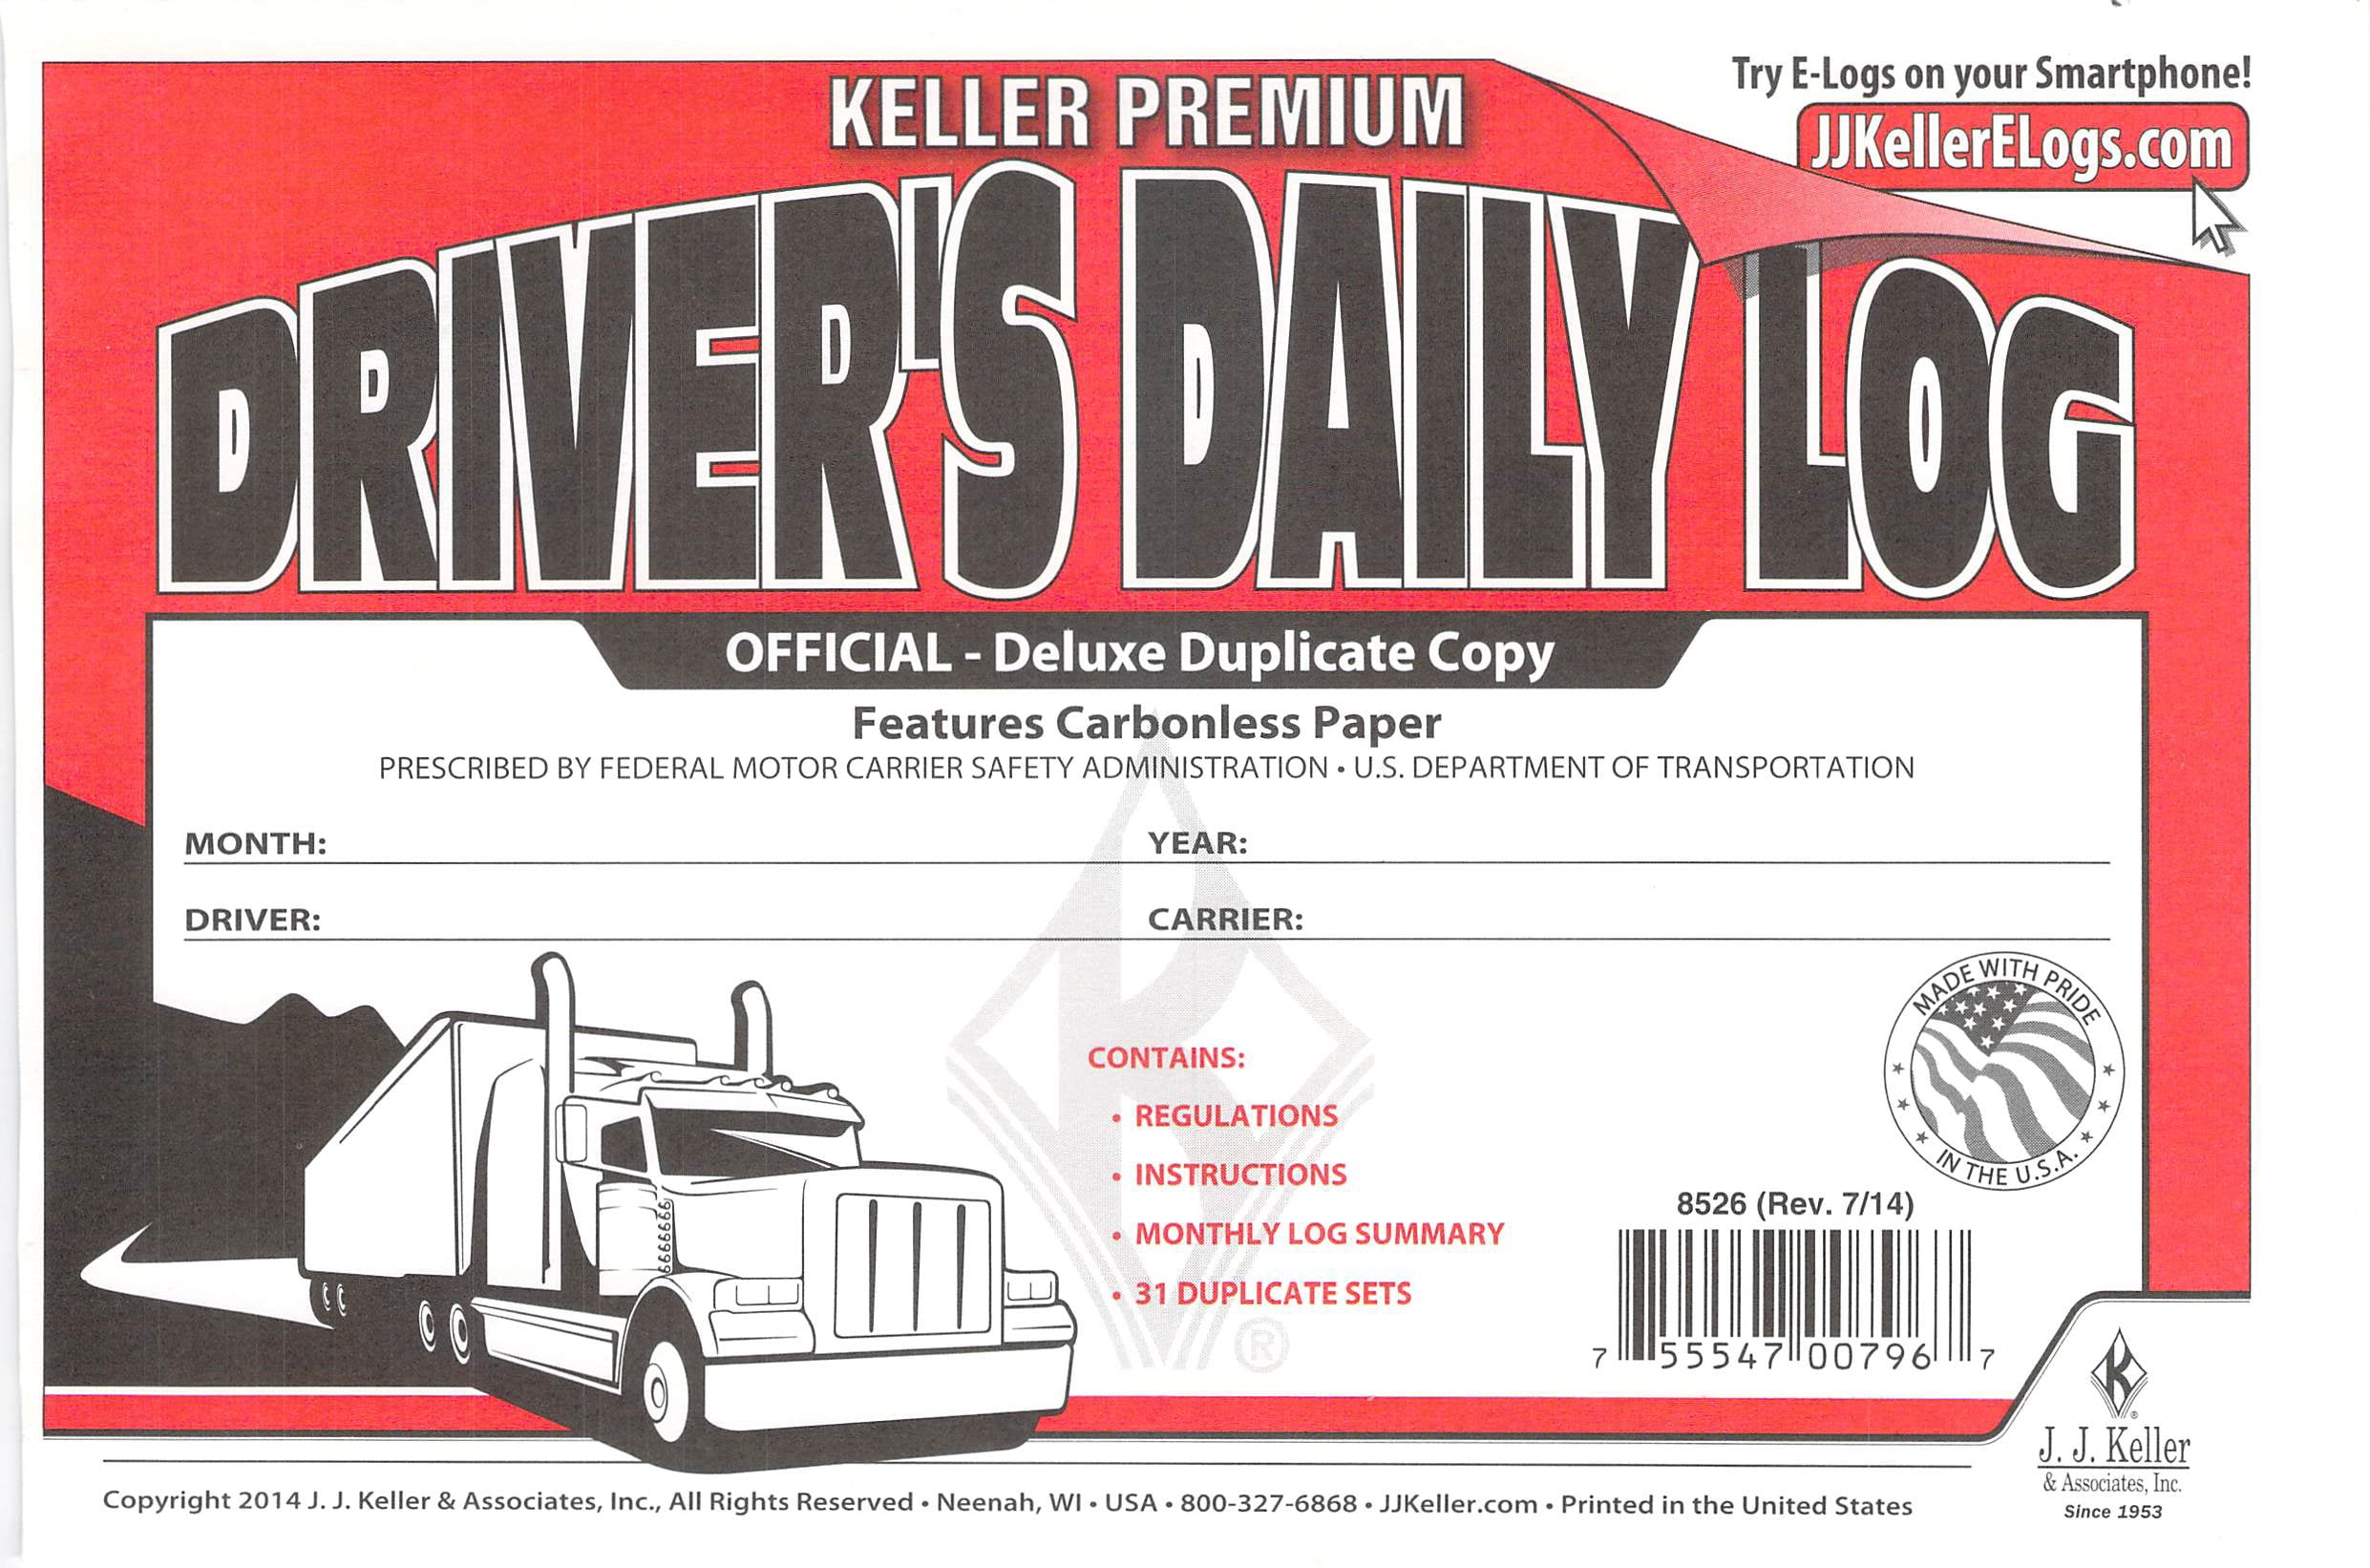 Lot of 100 JJ KELLER 8526 701L Duplicate Copy Driver's Daily Log Book Carbonless 